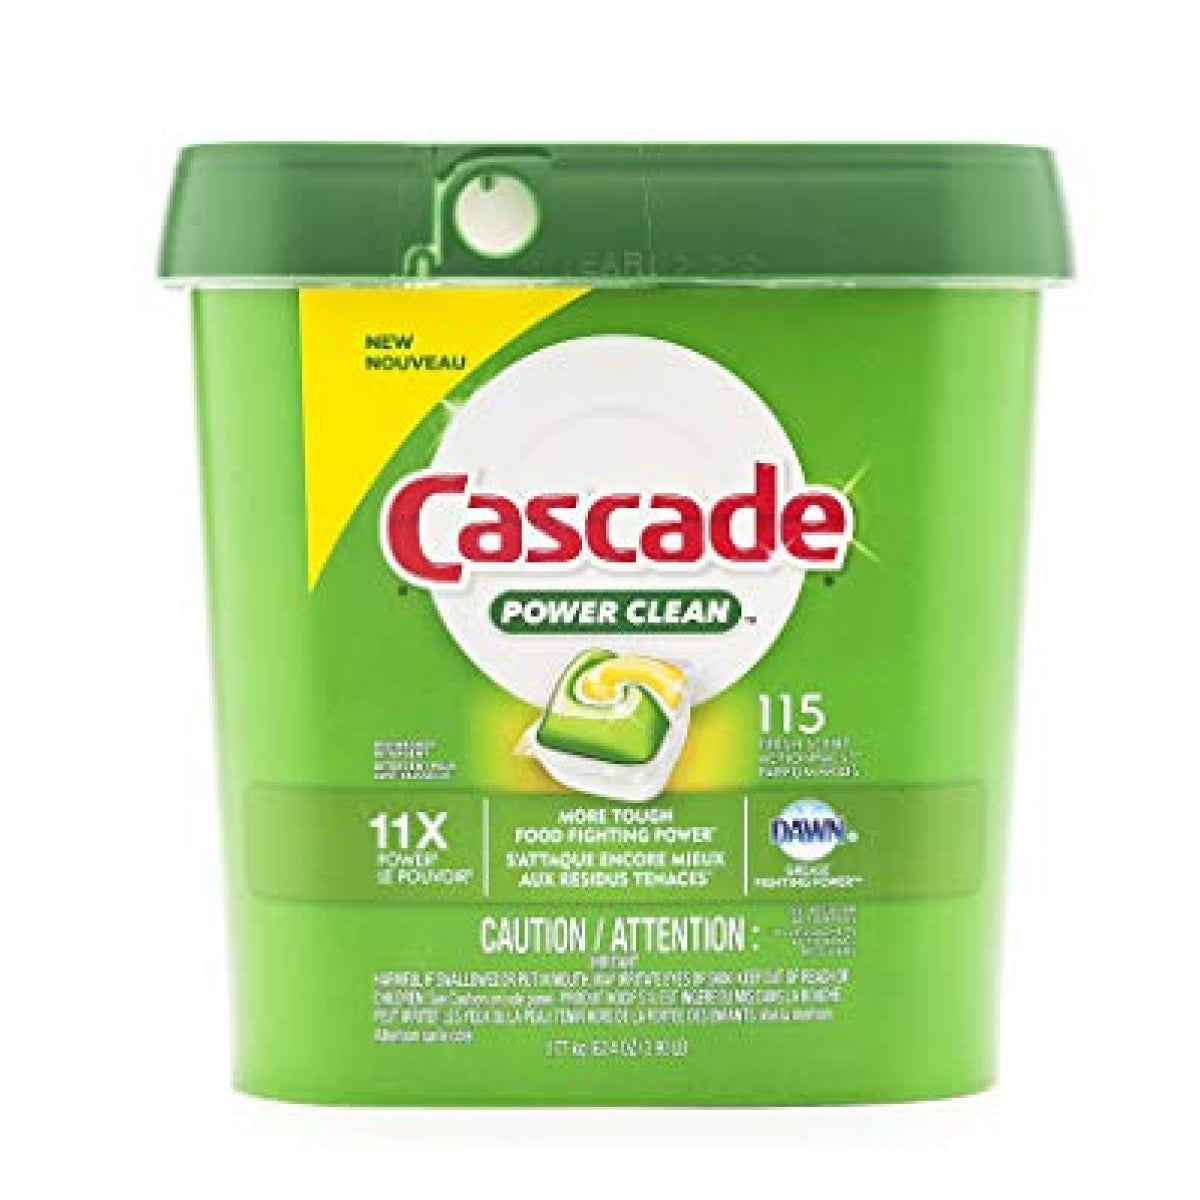 Cascade Power Clean Dishwasher Detergent, 115 tablets